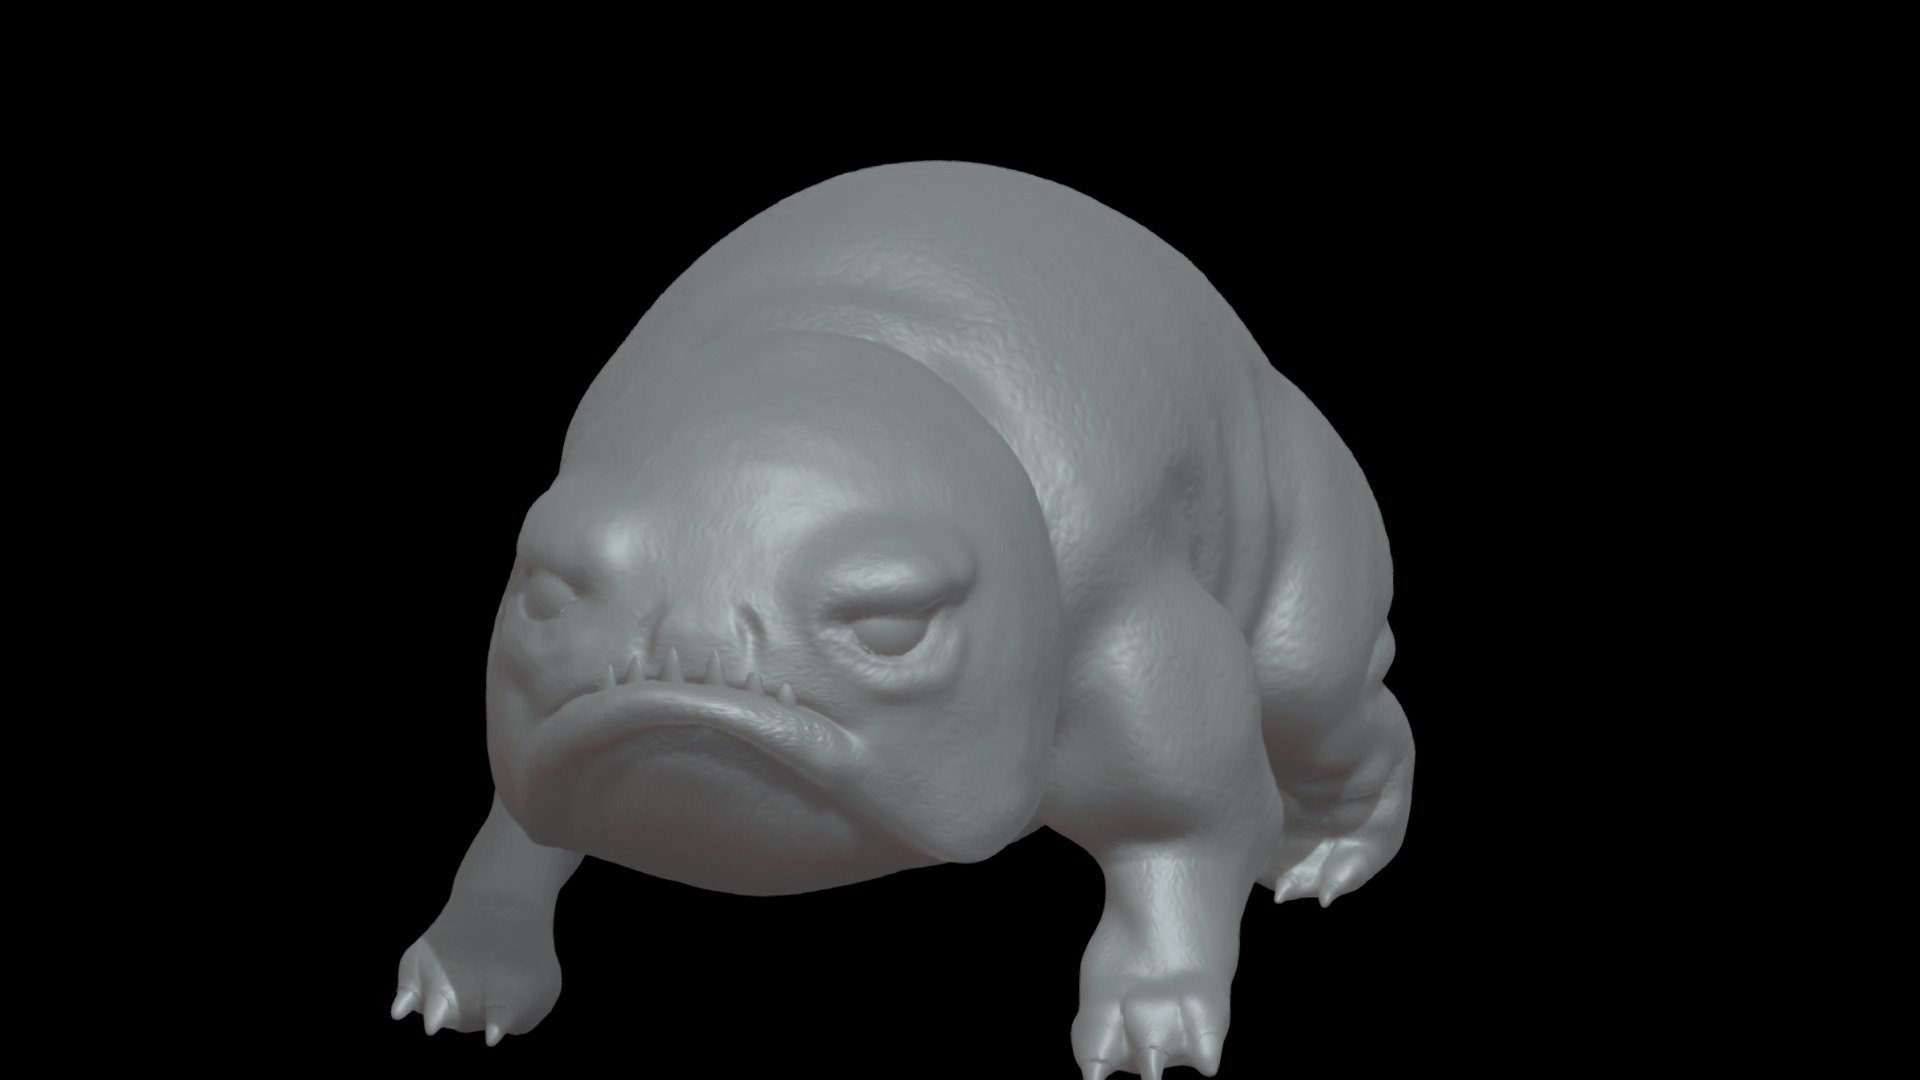 Bait, Ezran's grumpy pet Glow Toad